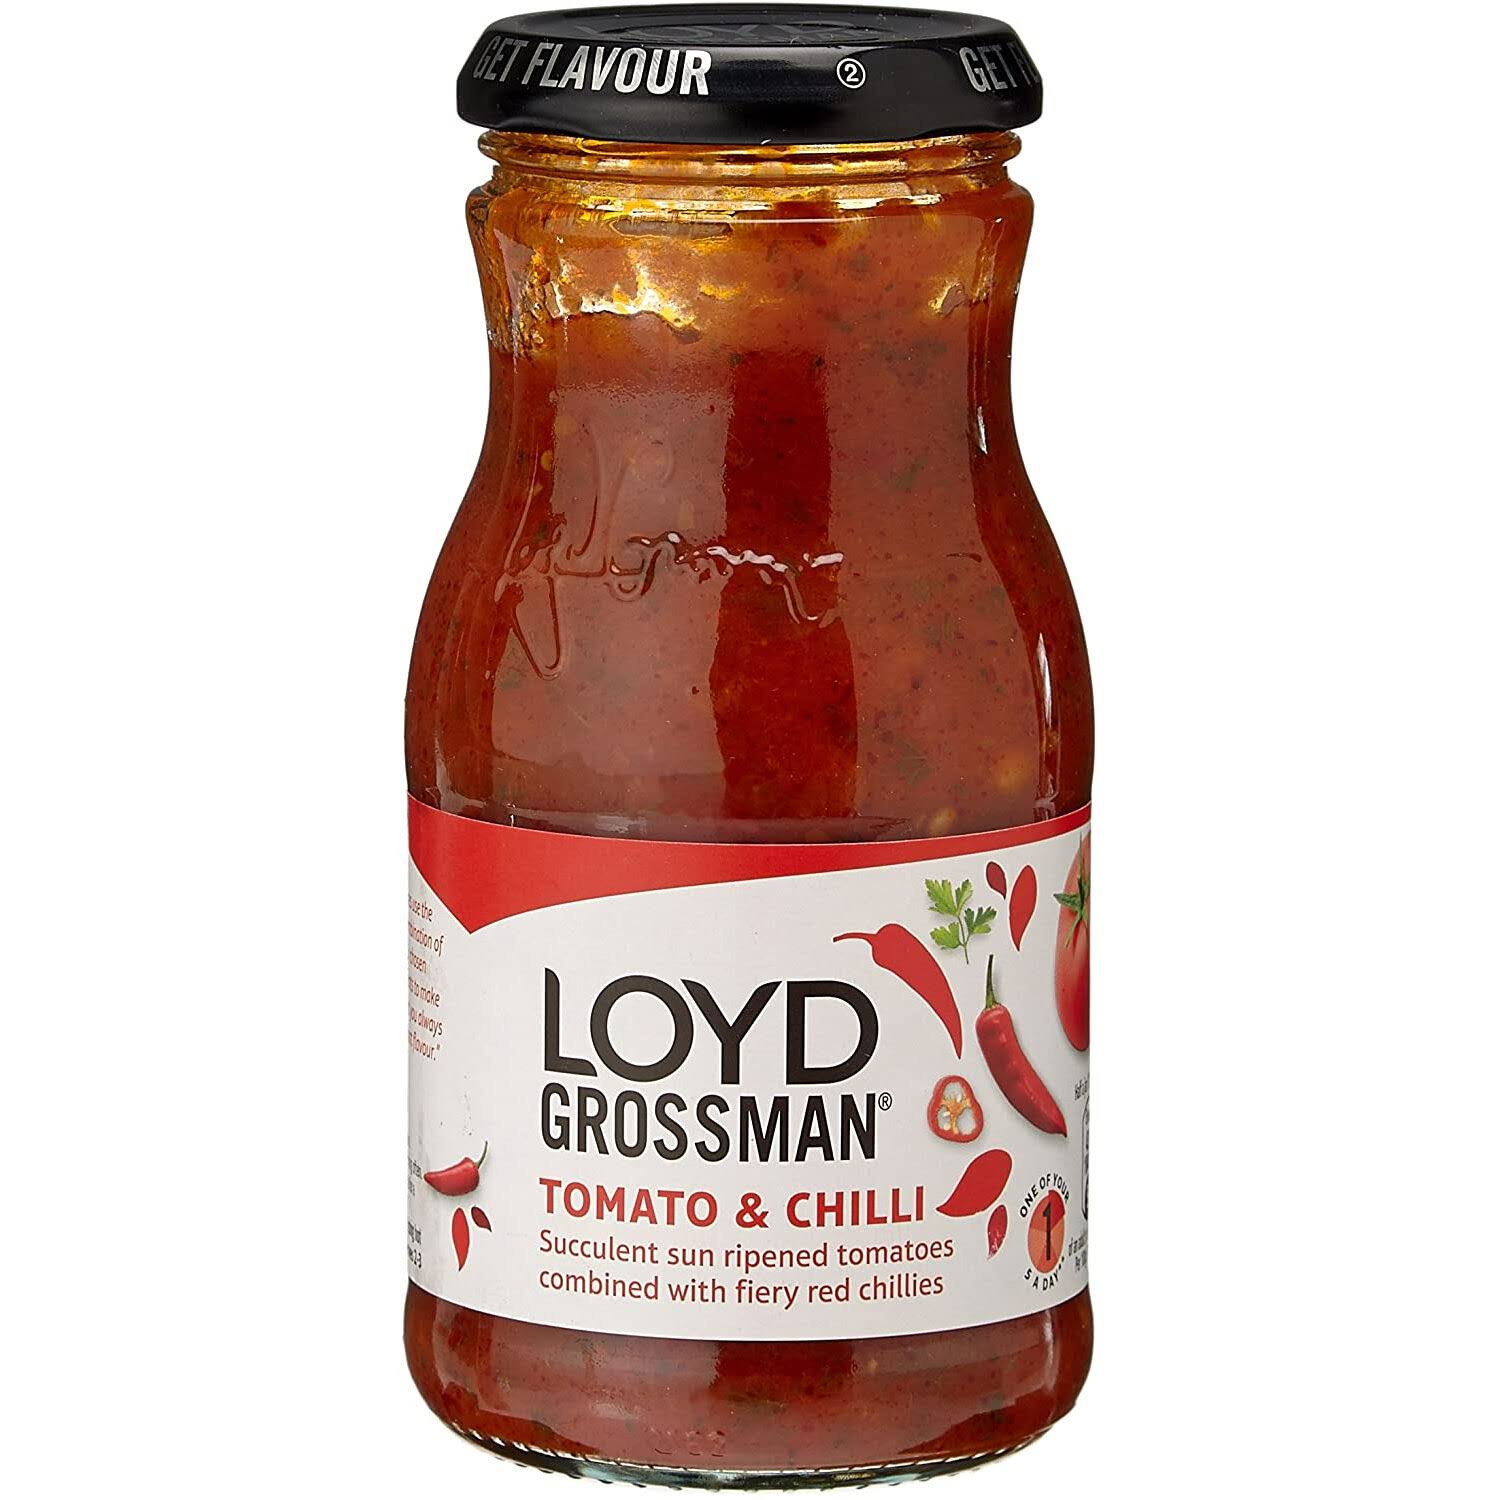 Loyd Grossman Tomato & Chilli Sauce 350g, Tasty Pasta Sauce